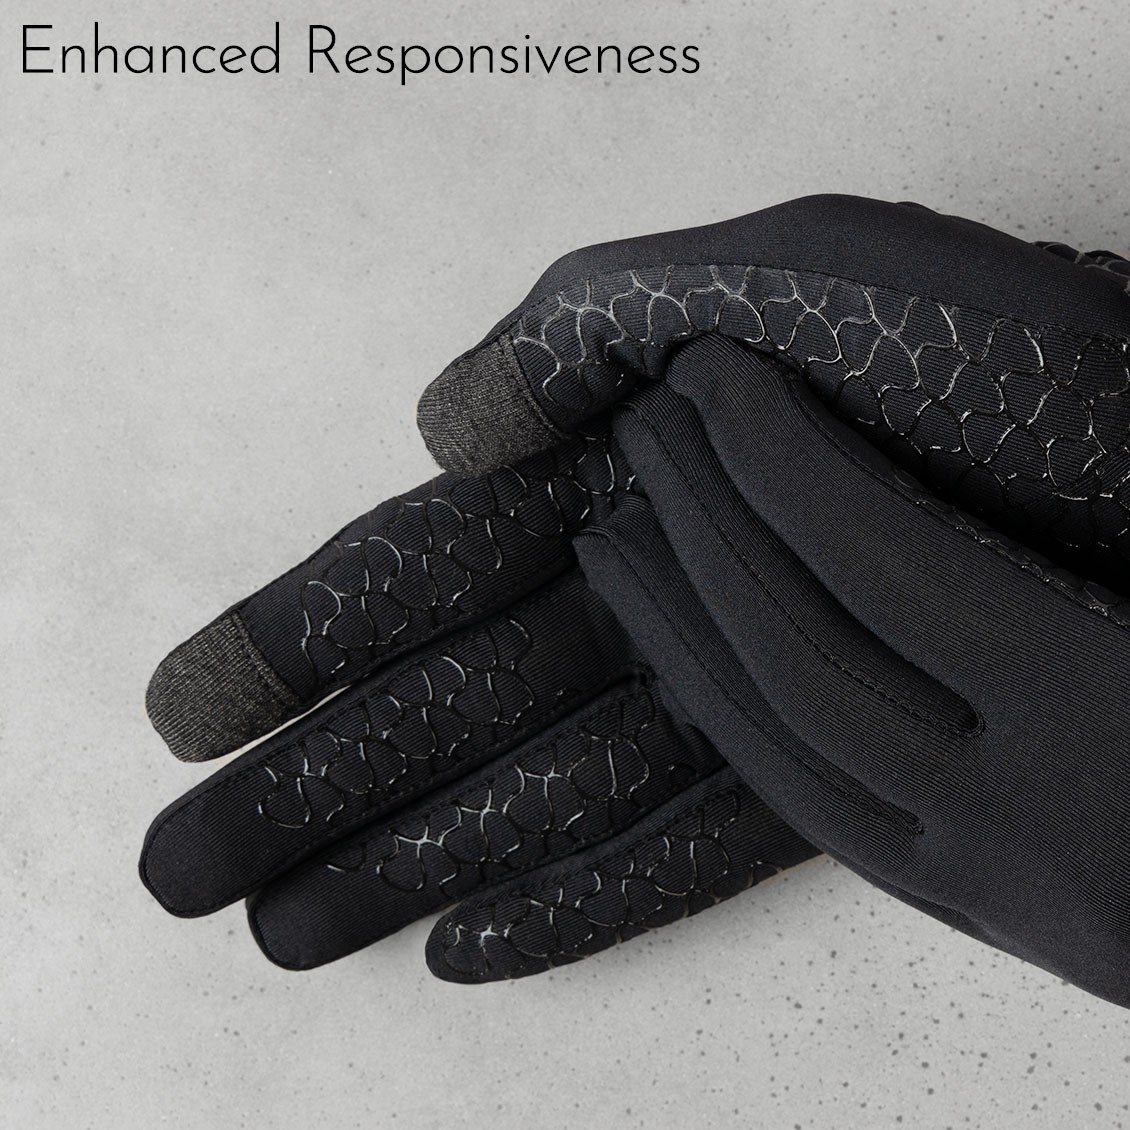 Sunnah Style Esteem Signature Gloves v2 Forearm Length Enhanced Responsiveness